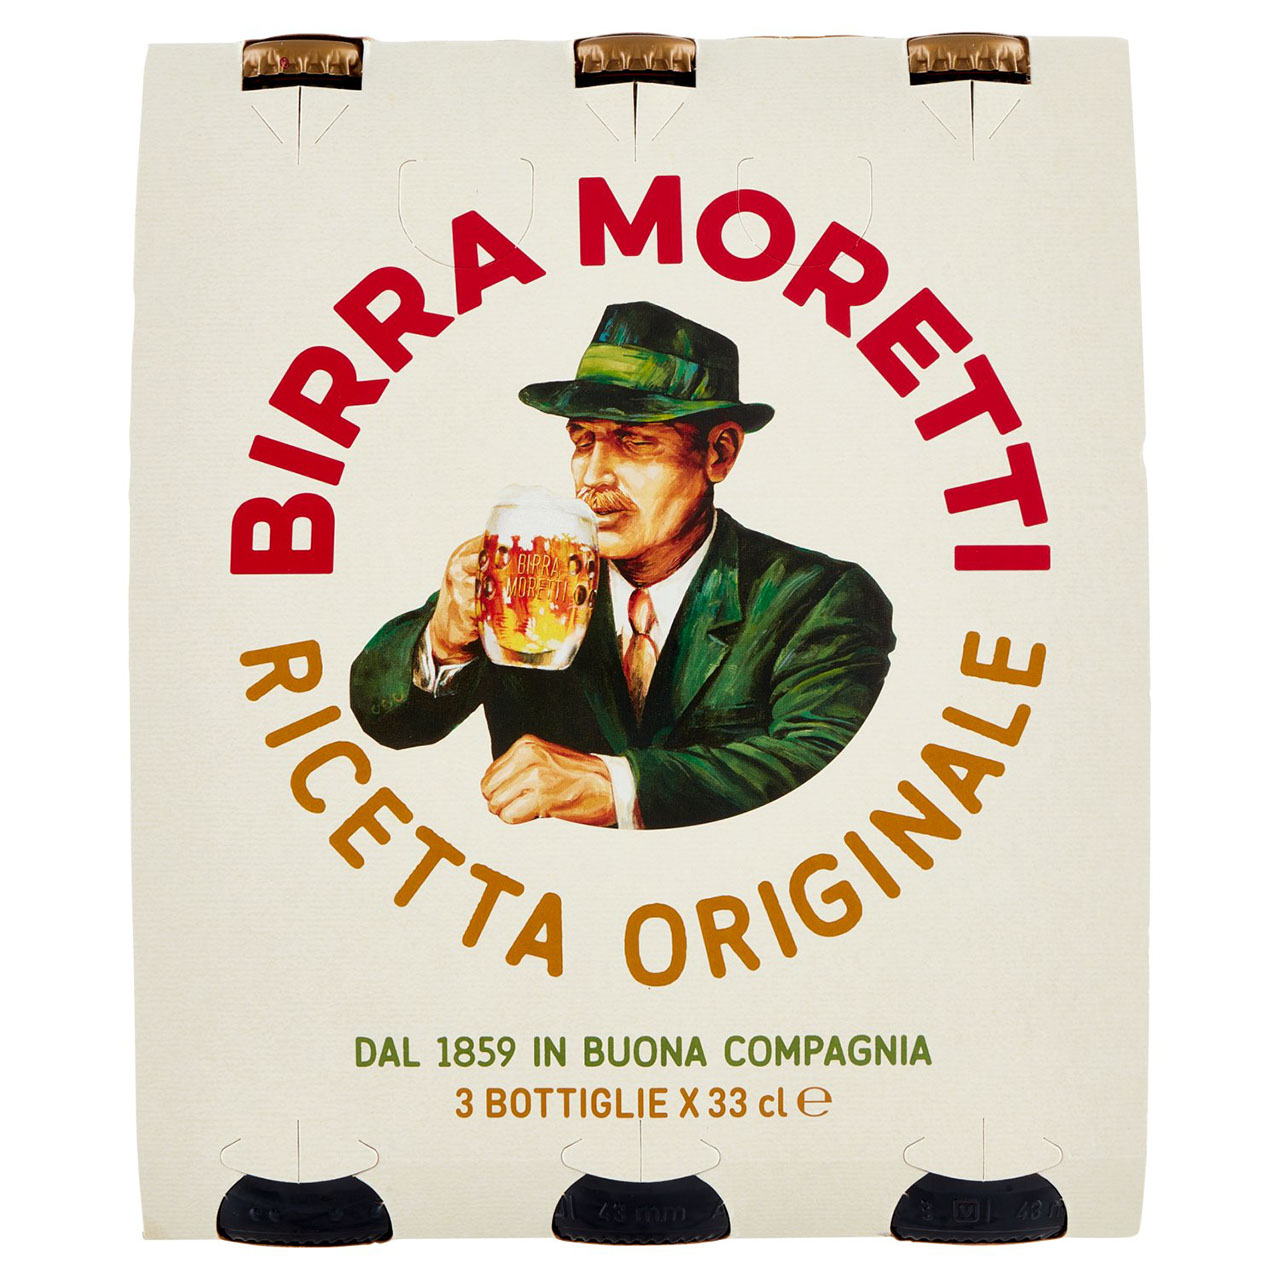 Birra Moretti Ricetta Originale 3 x 33 cl